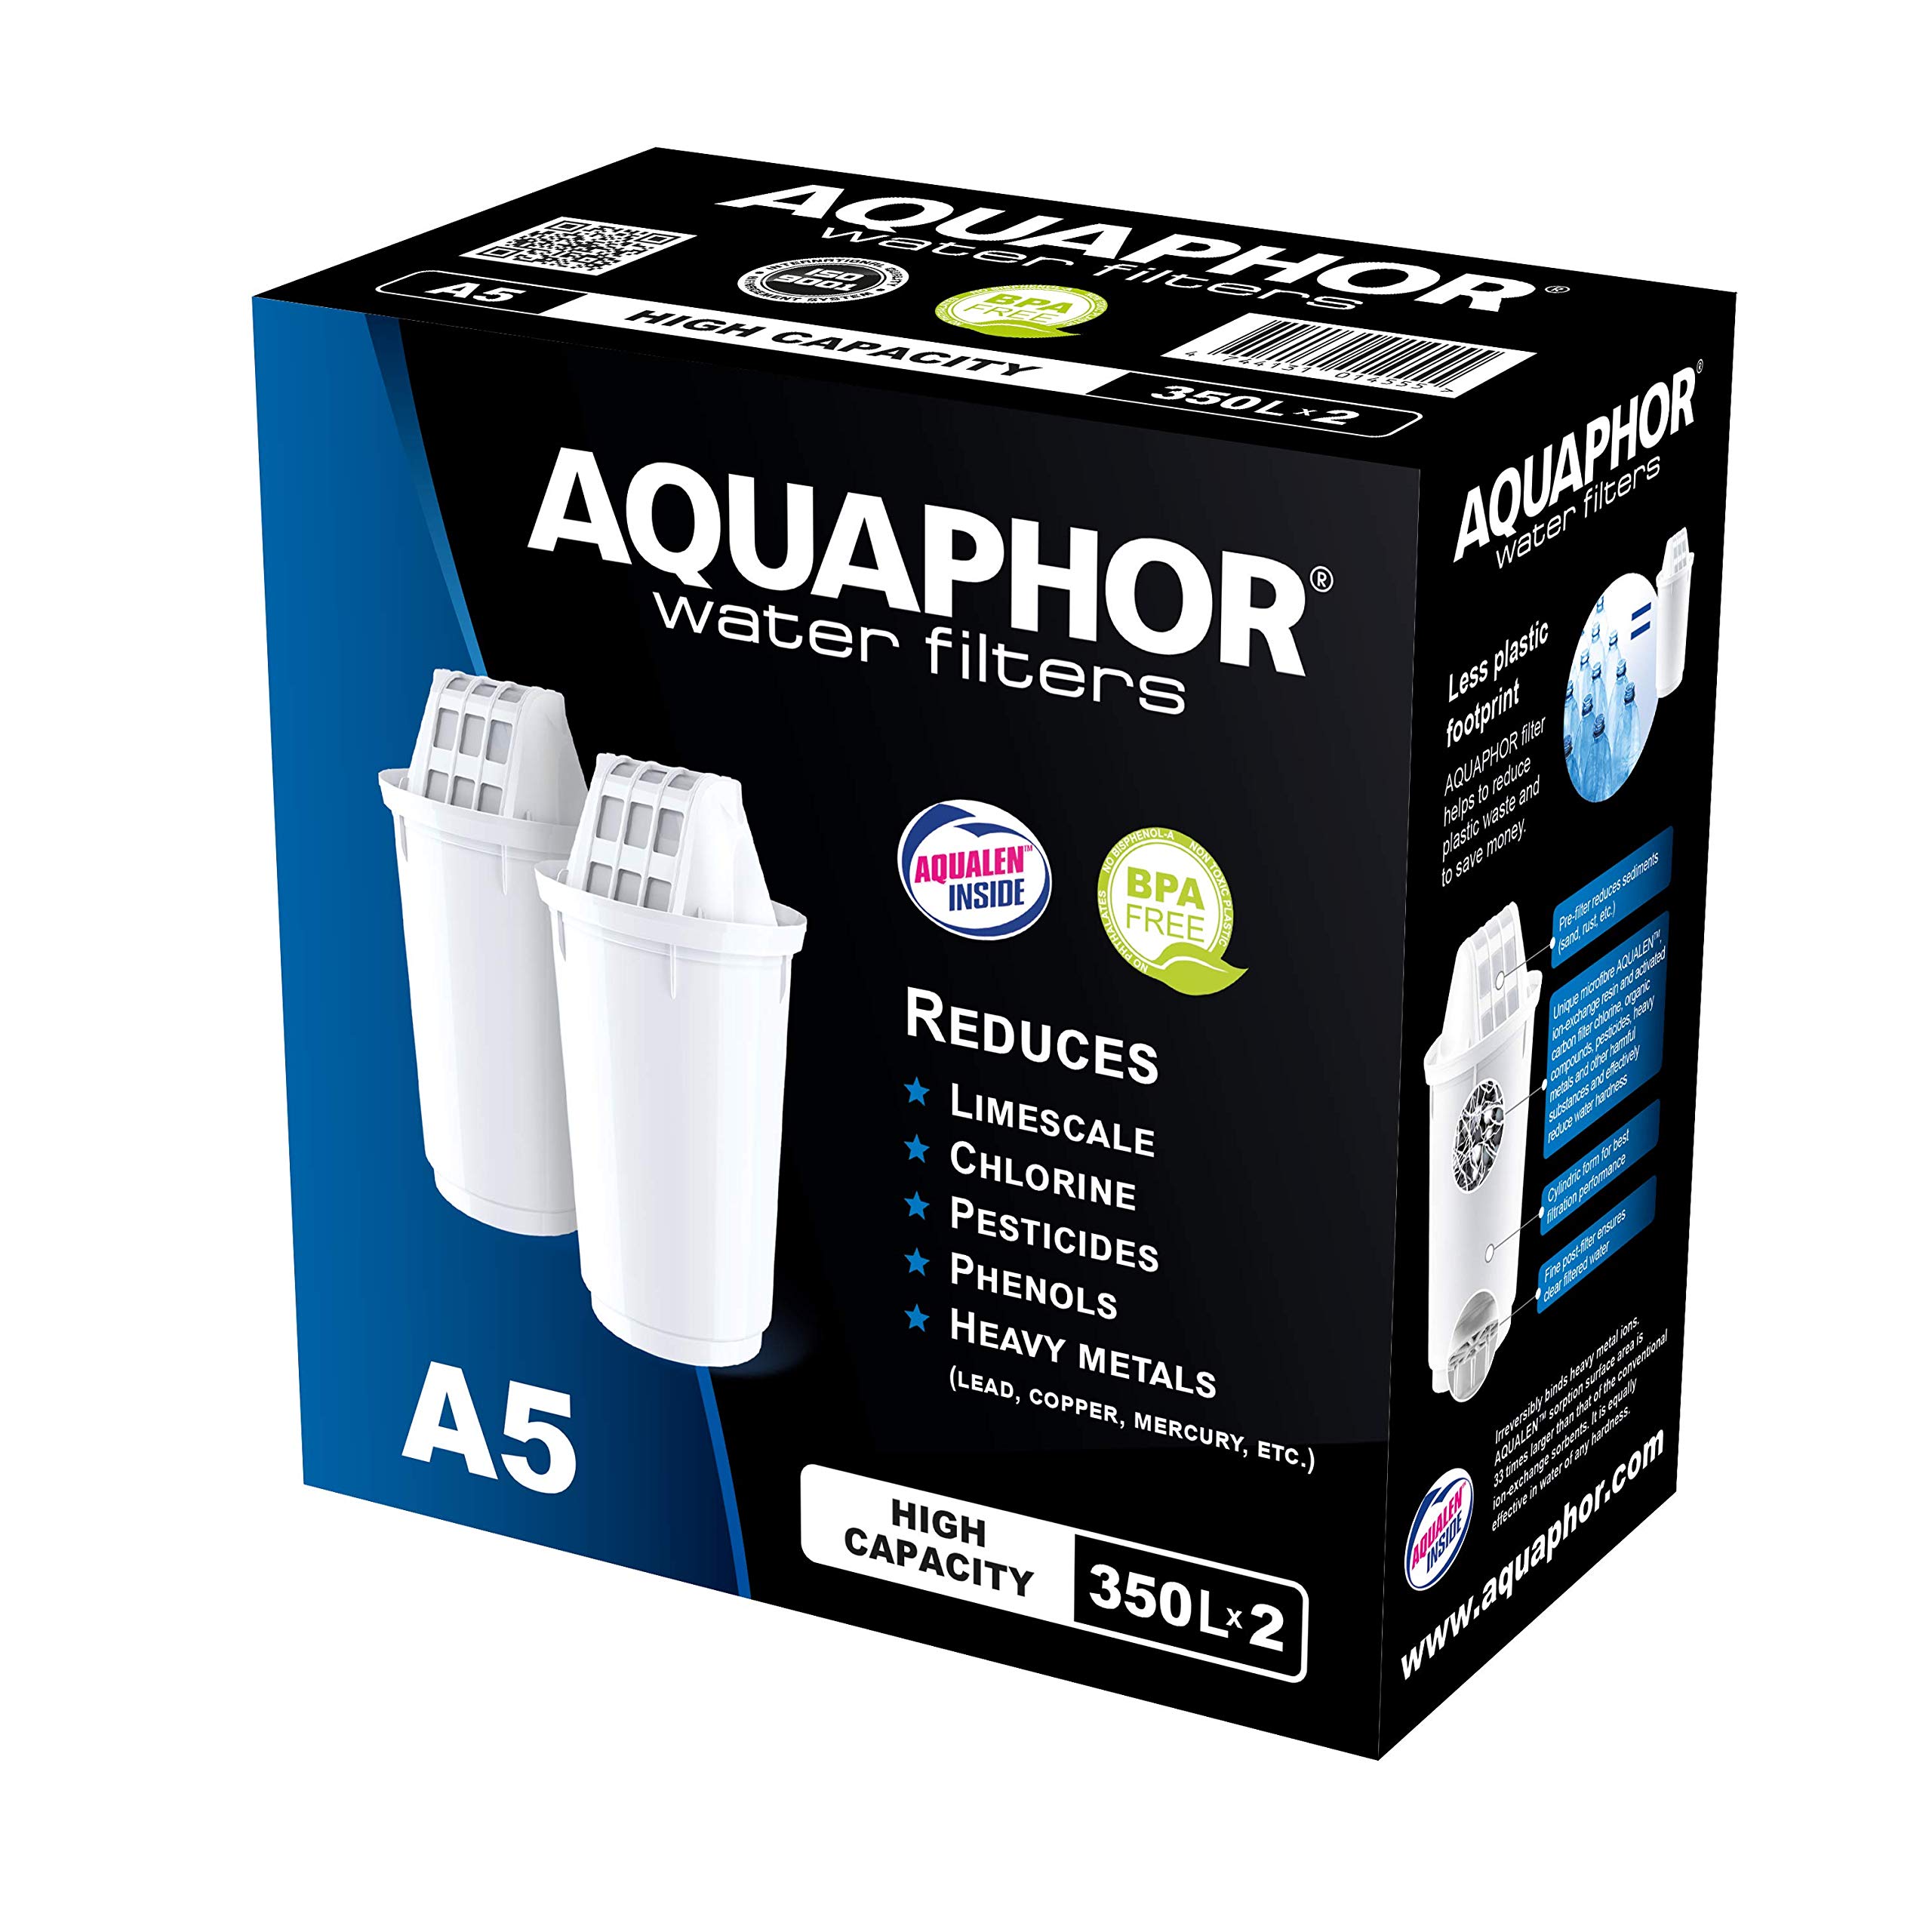 Сменный фильтр аквафор а5. Aquaphor Water Filters 350 a5h. Сменный фильтр для воды Аквафор а5. Фильтр-картридж Аквафор к5. Картридж Аквафор а5.